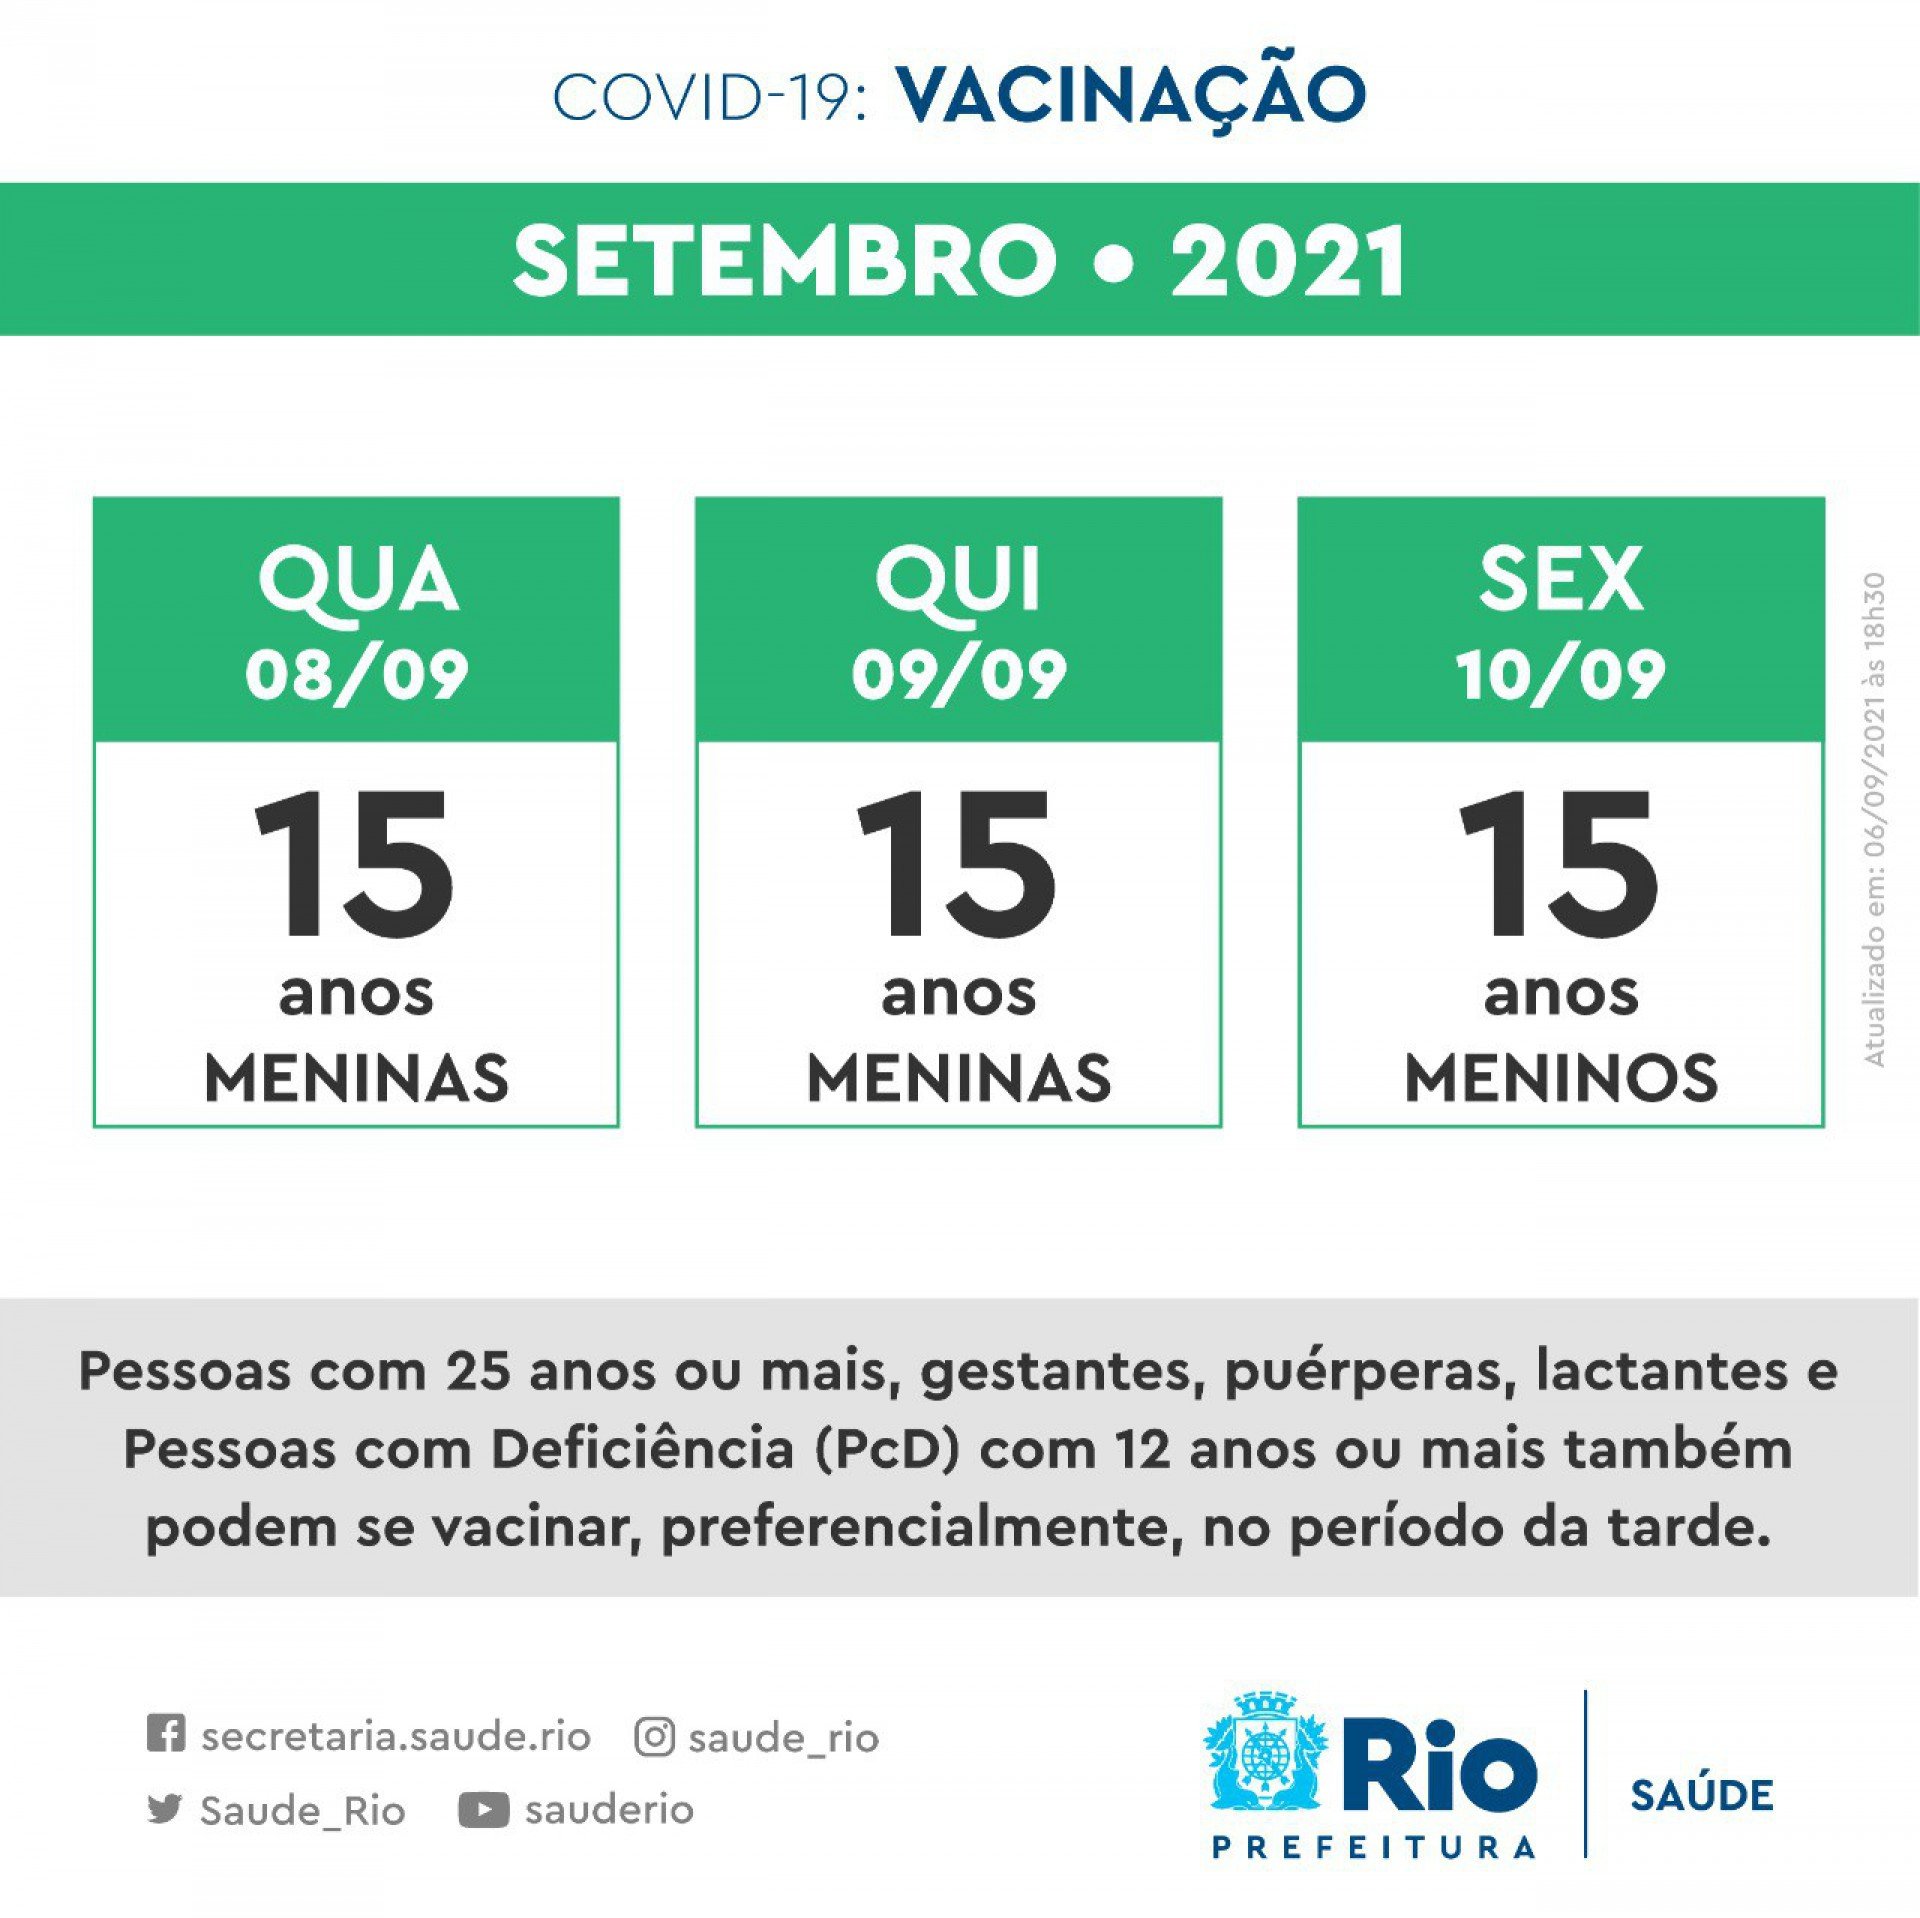 Novo calendário mostra que meninas e meninos de 15 anos receberão primeira dose até sexta-feira - Foto: Reprodução / Prefeitura do Rio